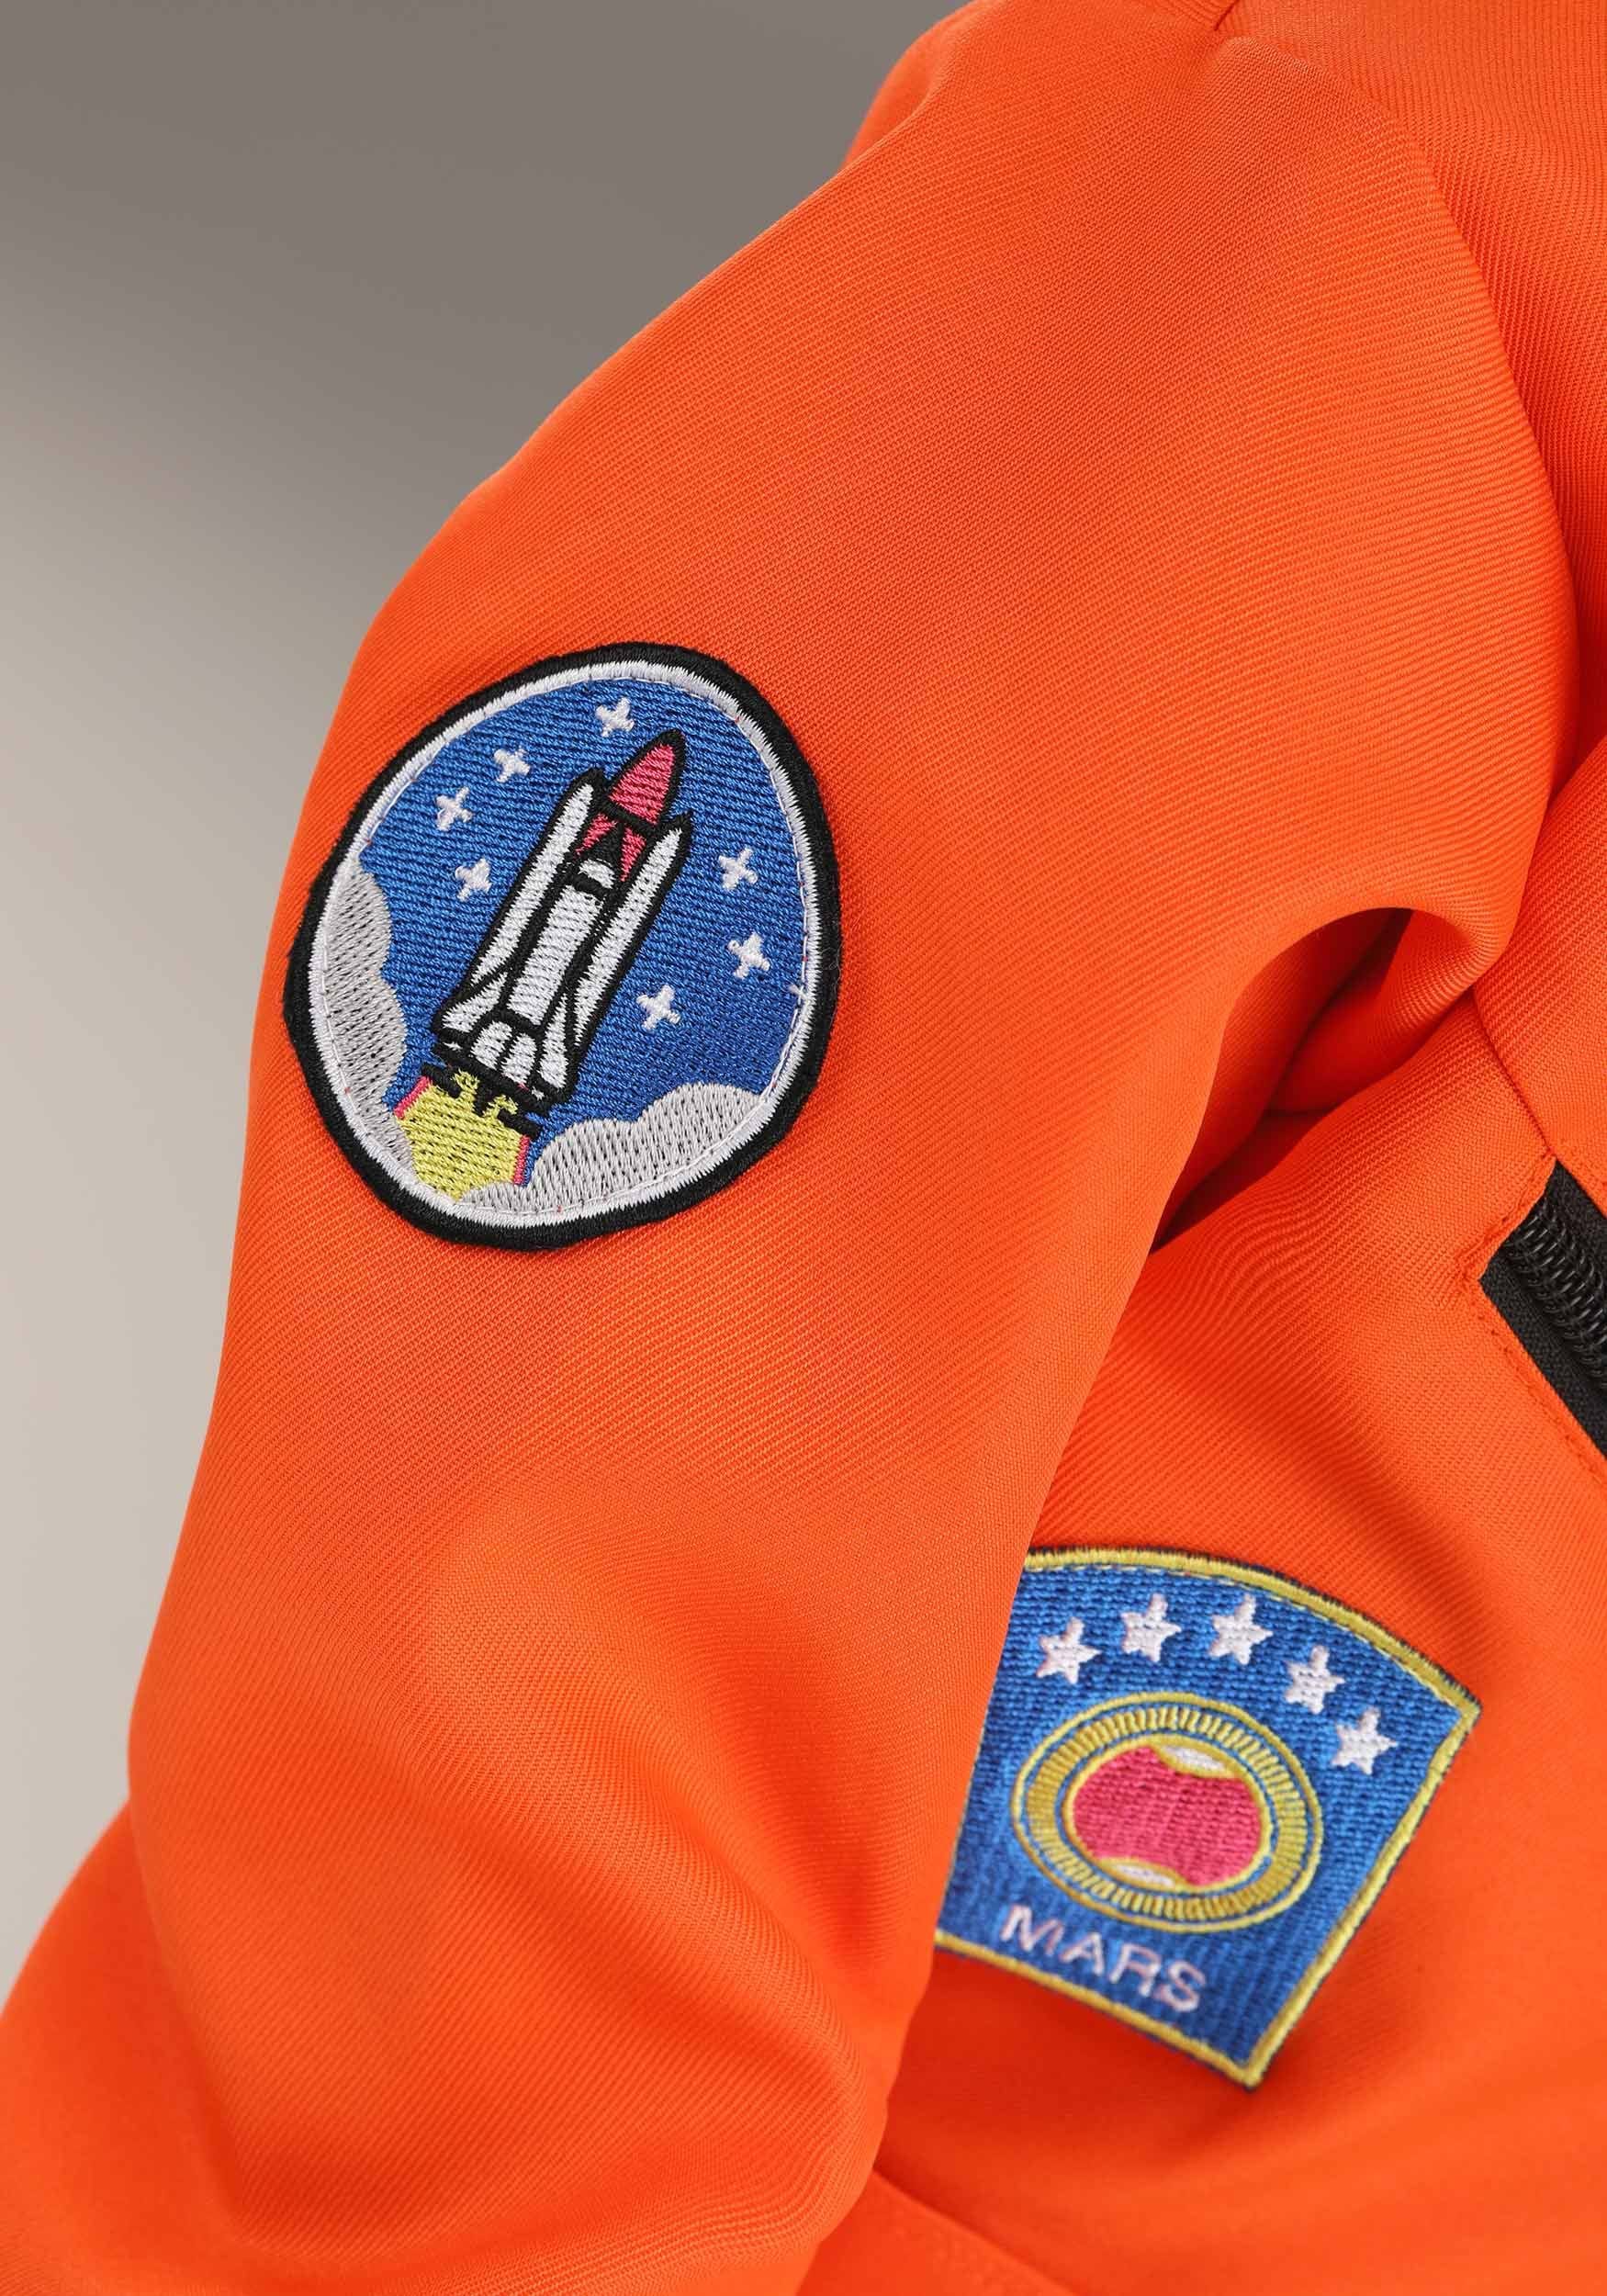 Orange Astronaut Jumpsuit Toddler Costume